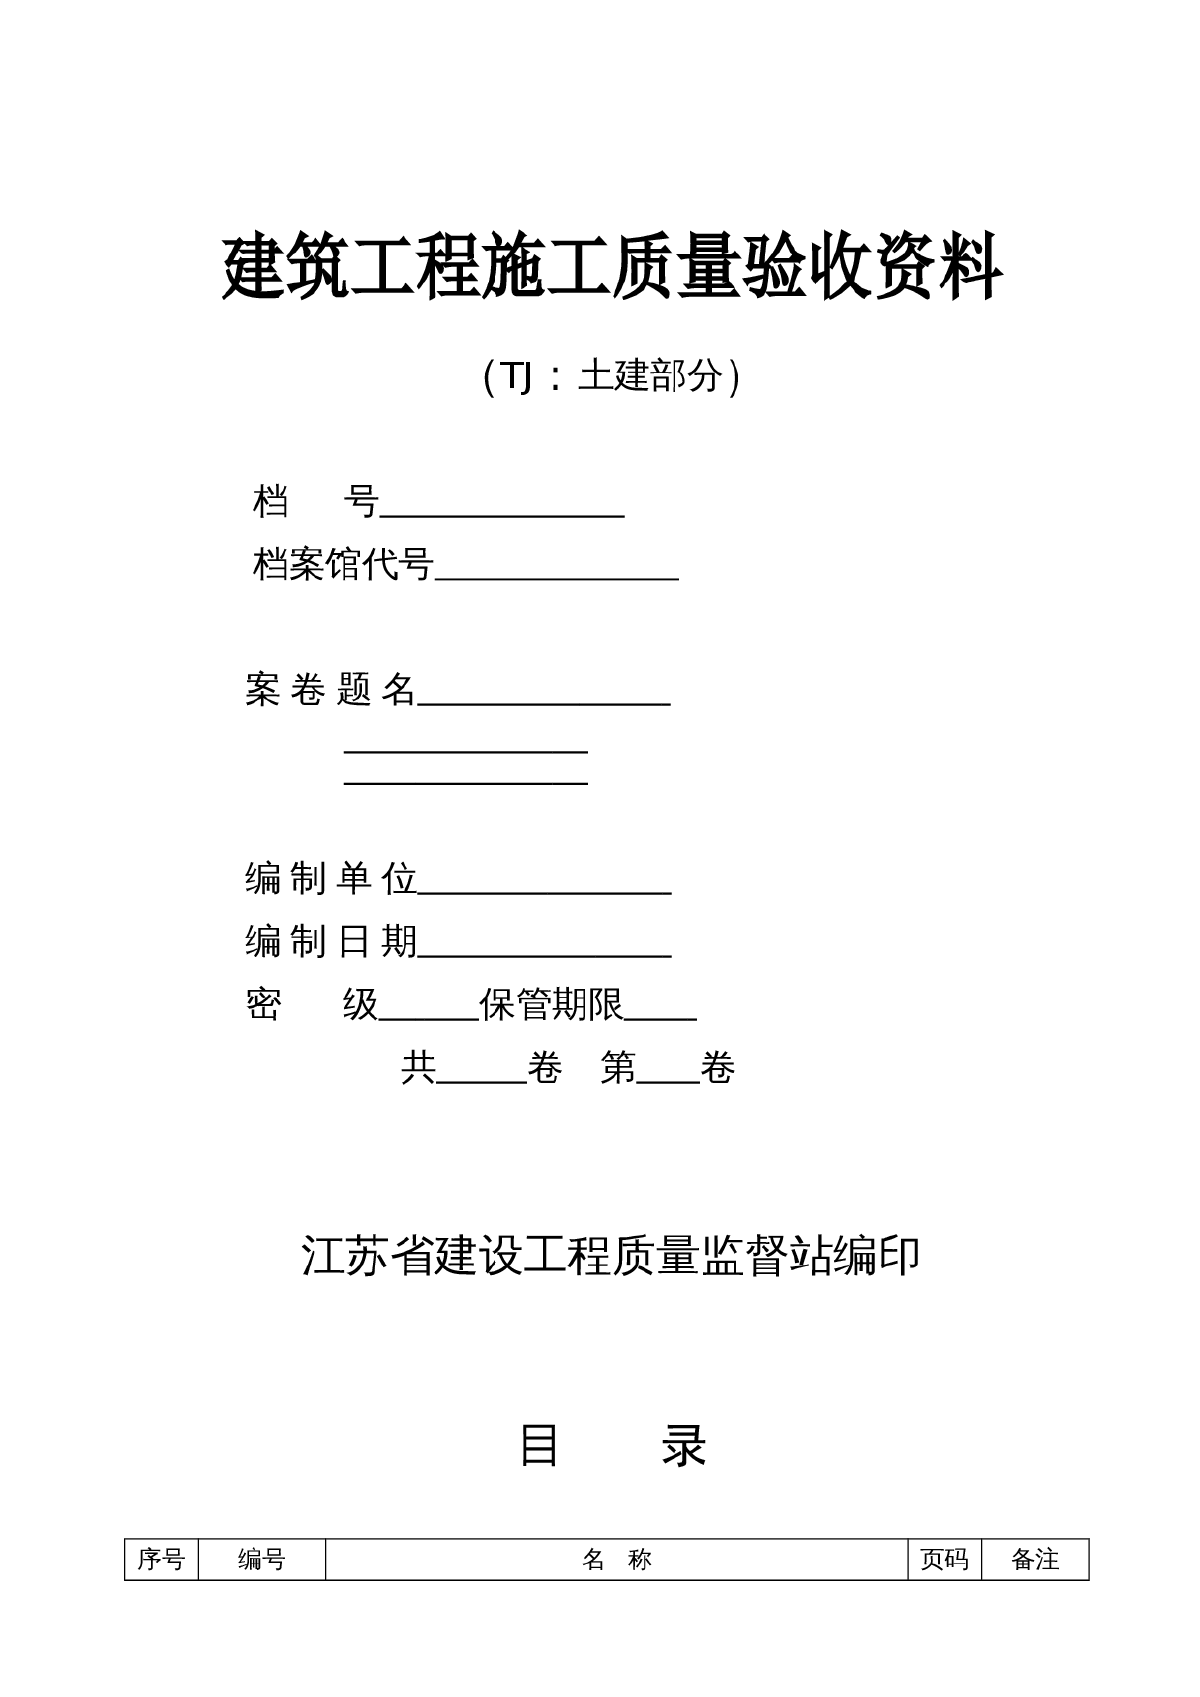 【江苏省】检验批质量验收记录土建部分全套